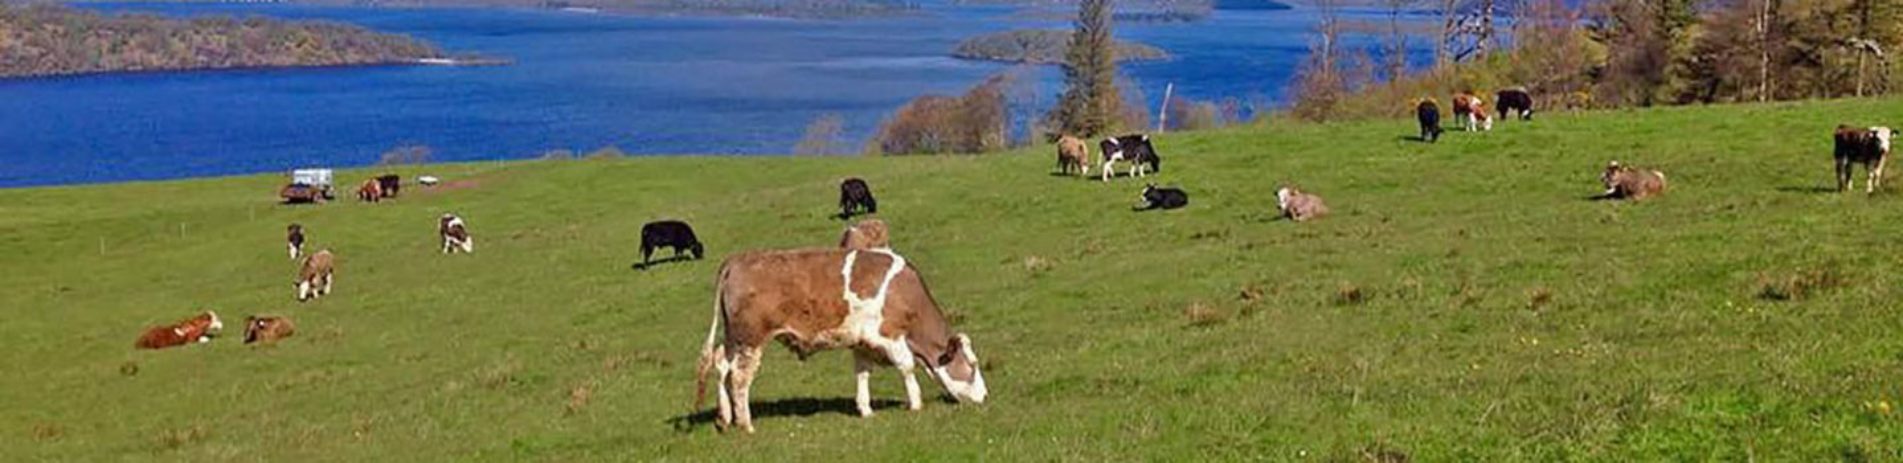 over-dozen-cattle-on-pasture-at-edge-of-loch-lomond